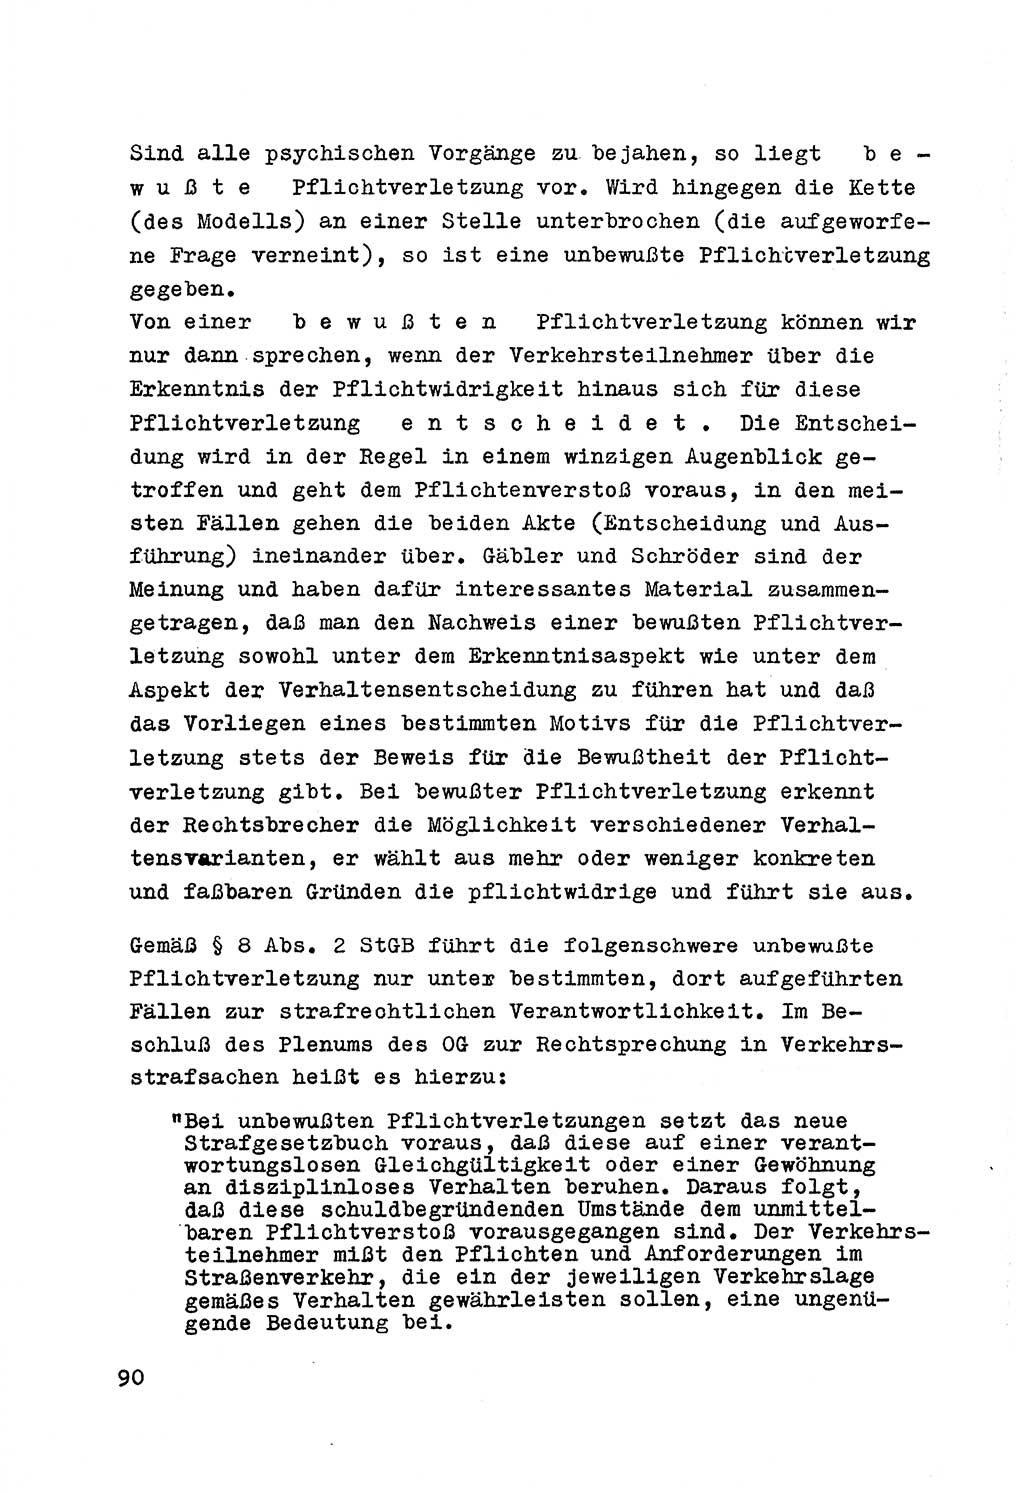 Strafrecht der DDR (Deutsche Demokratische Republik), Besonderer Teil, Lehrmaterial, Heft 7 1970, Seite 90 (Strafr. DDR BT Lehrmat. H. 7 1970, S. 90)